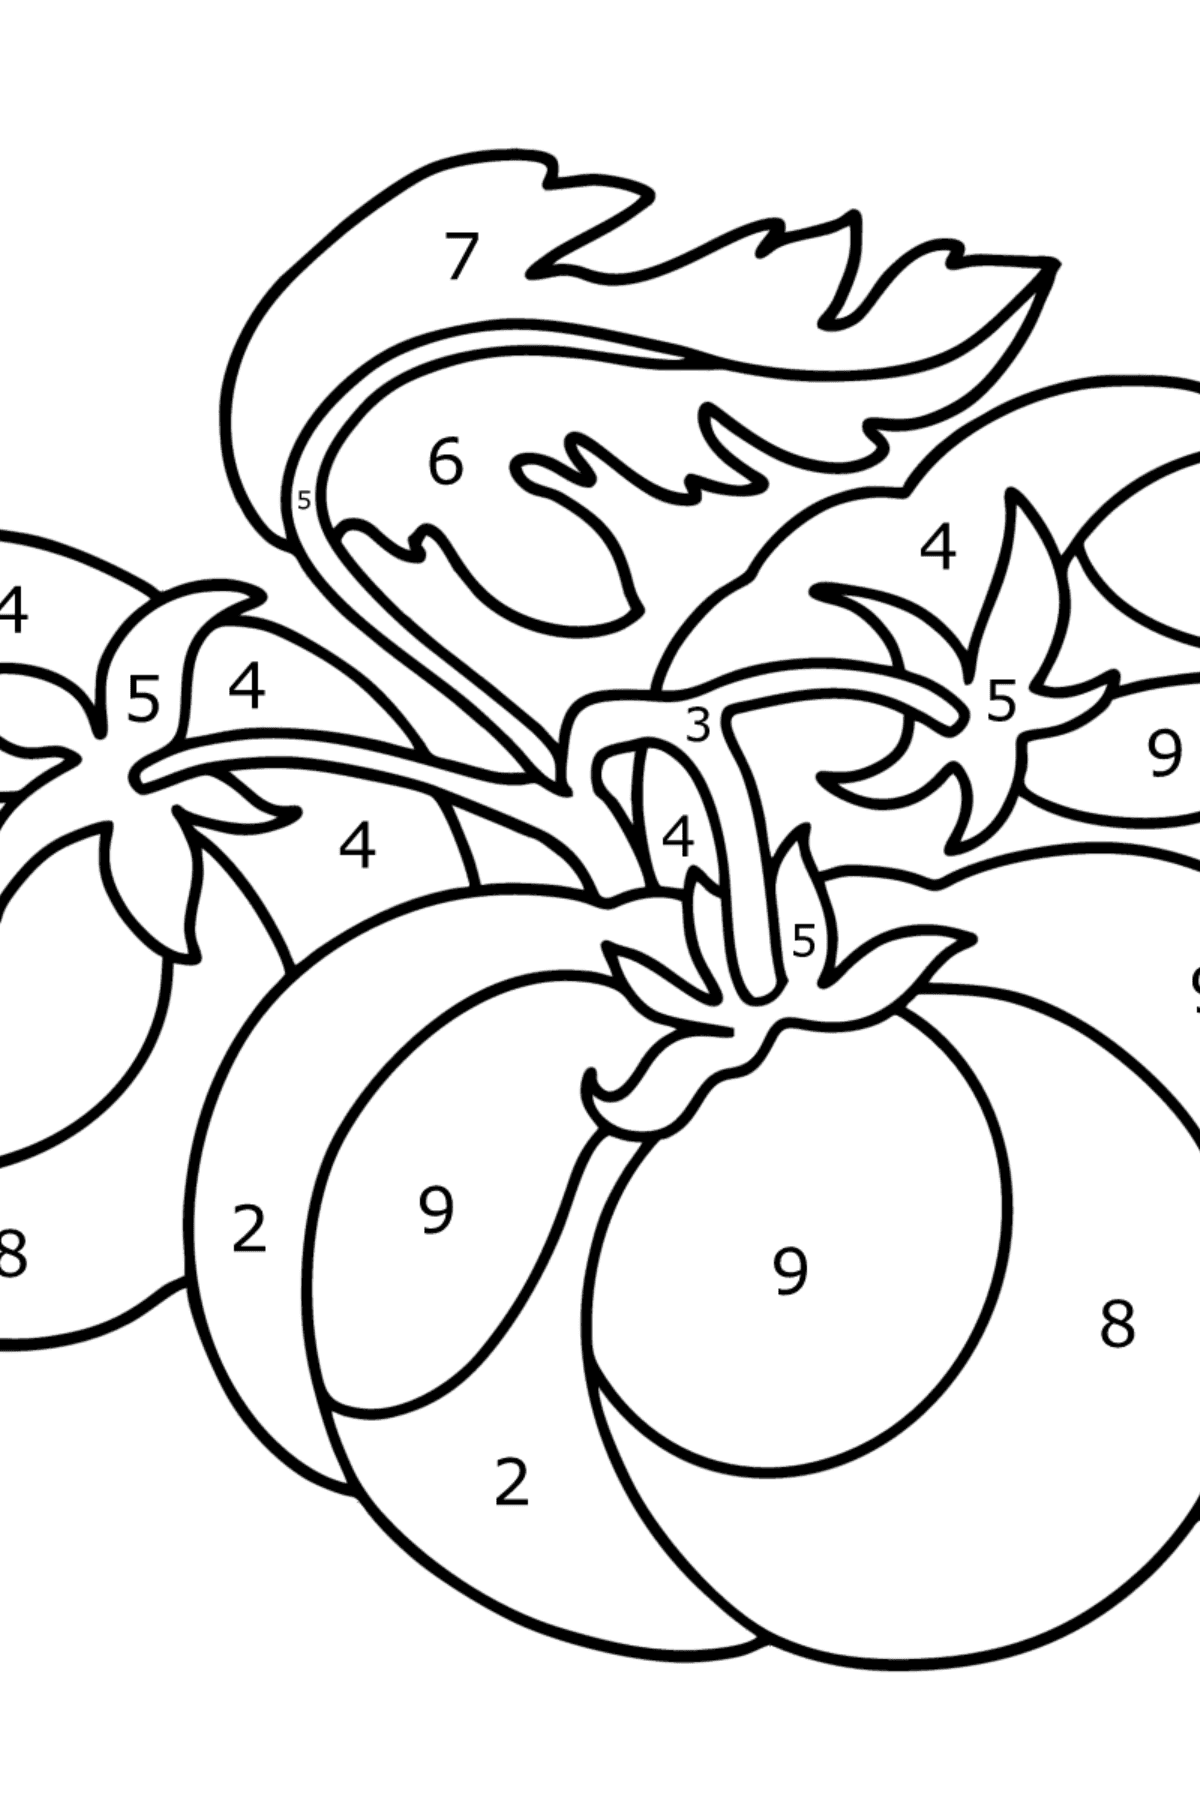 Boyama sayfası Büyük domates - Sayılarla Boyama çocuklar için